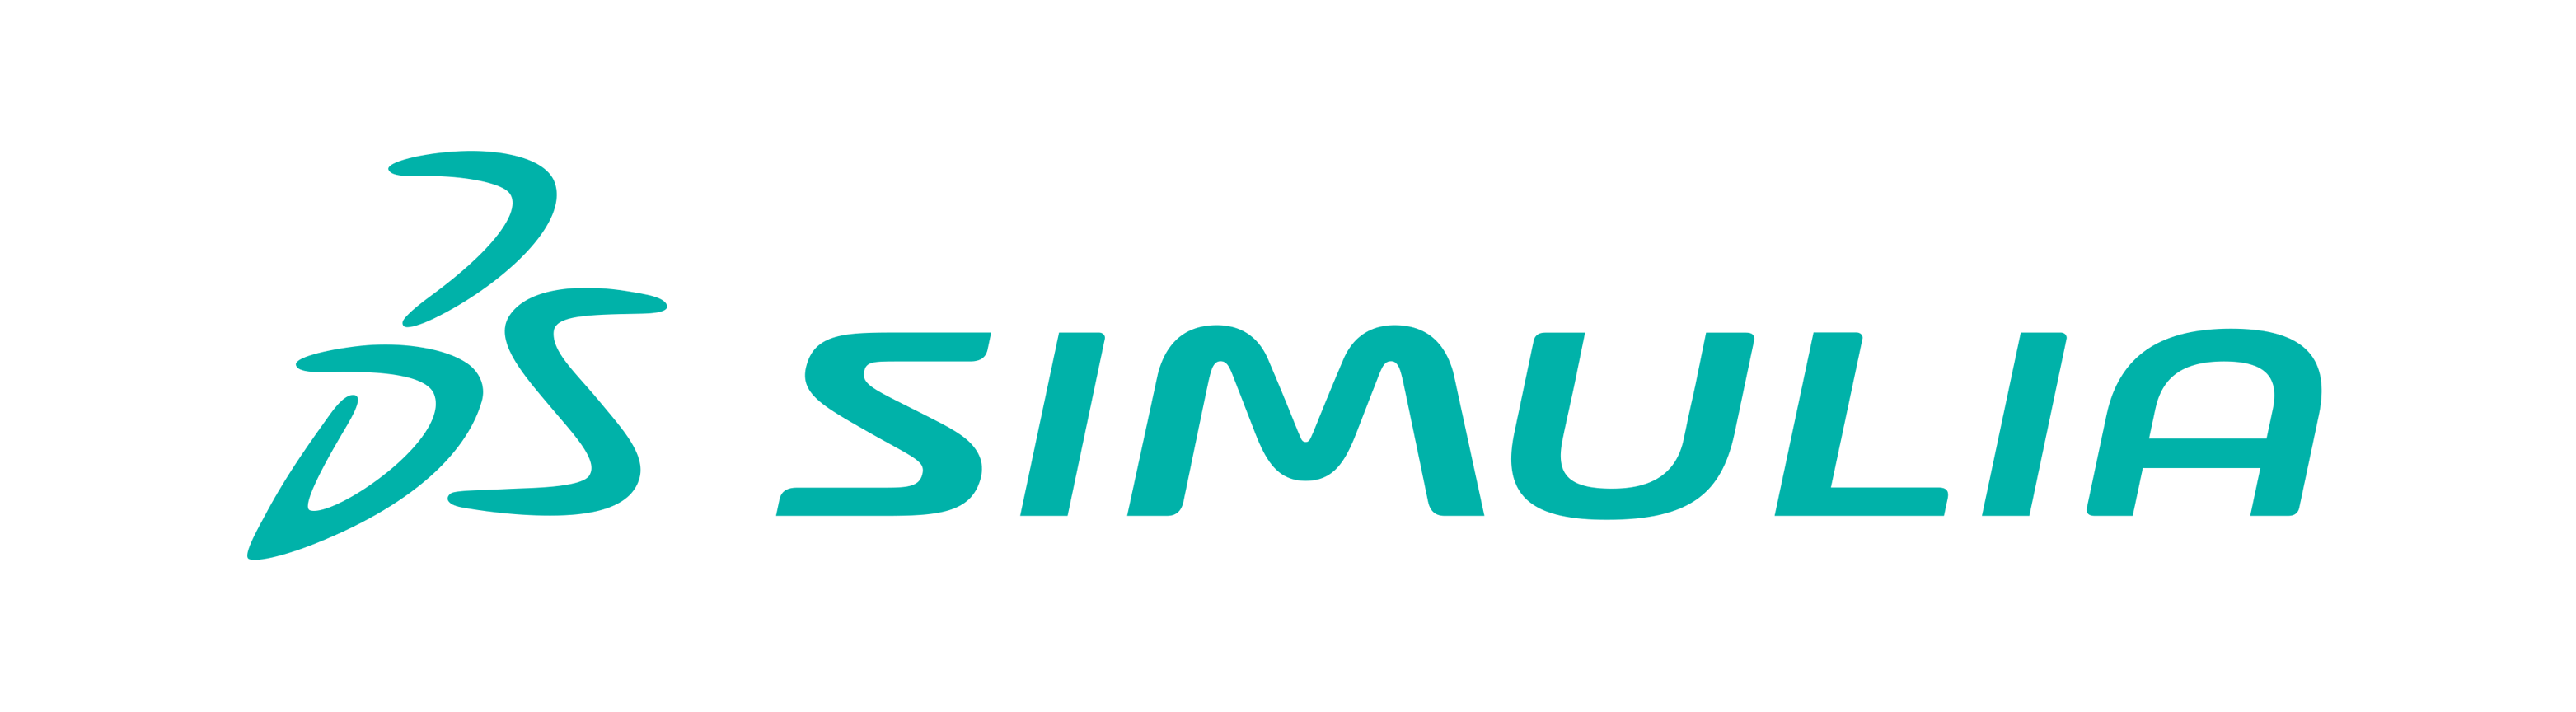 SIMULIA, Dassault Systèmes 